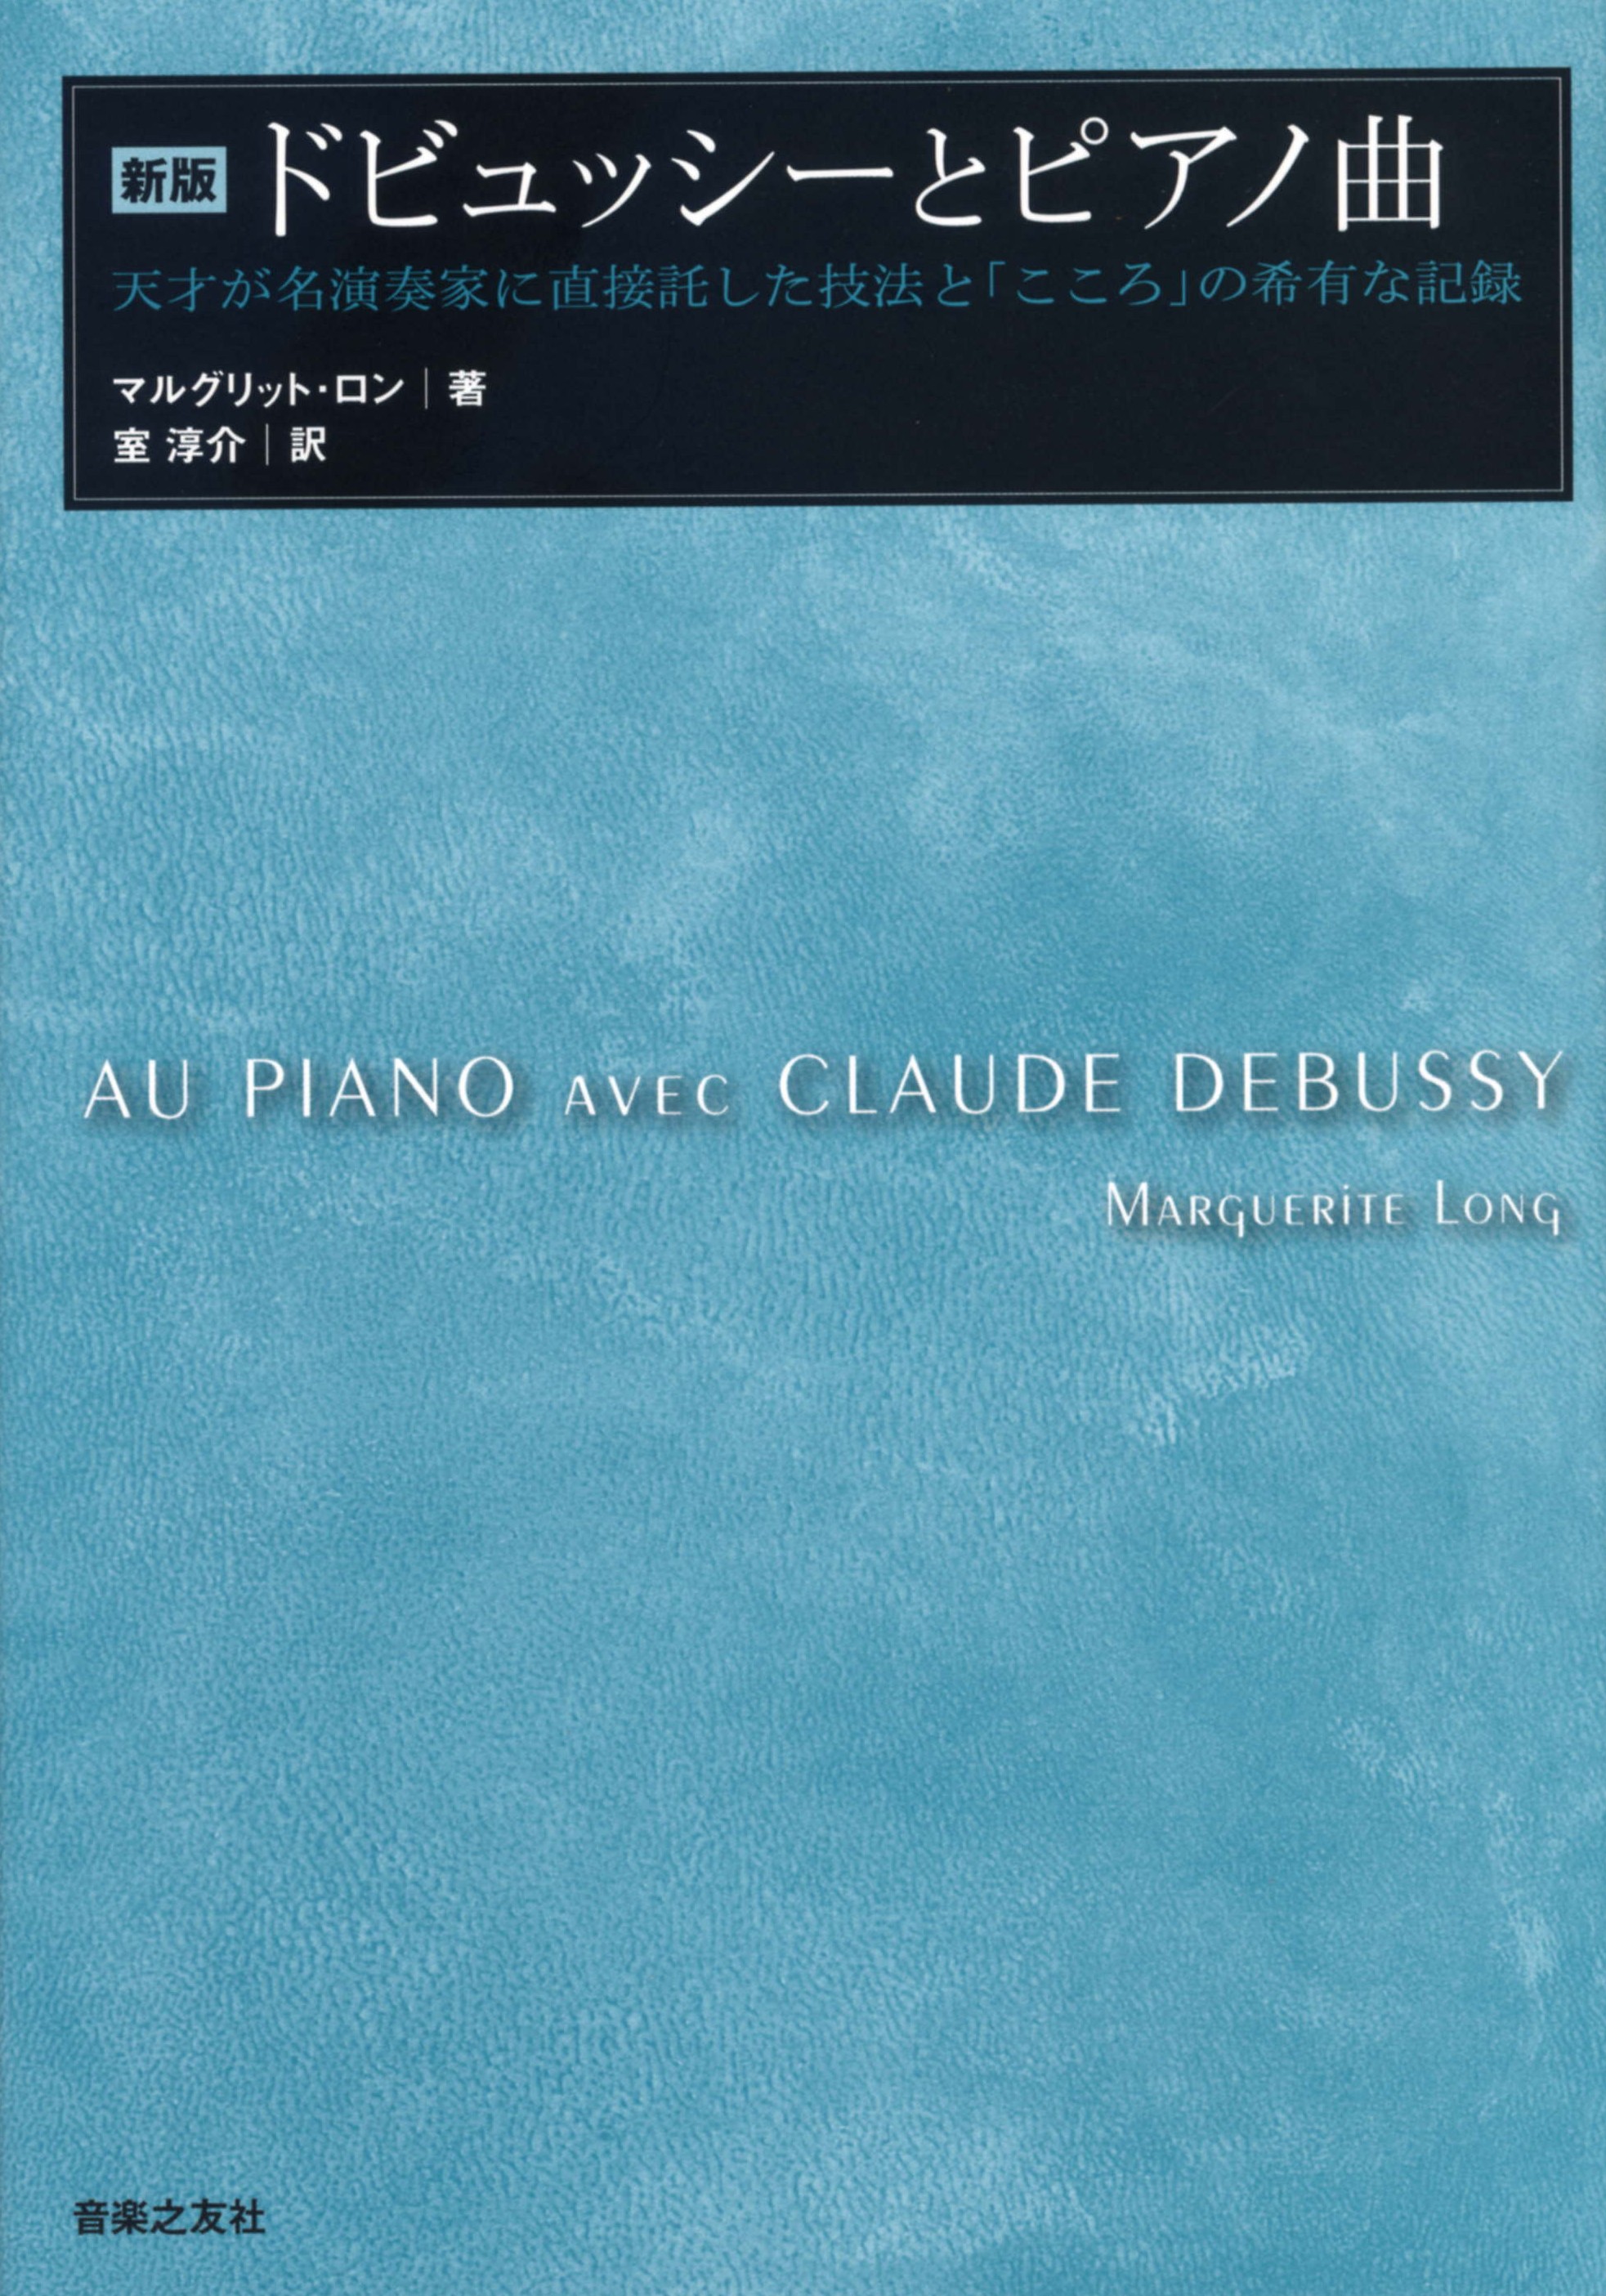 ドビュッシーとピアノ曲の商品画像